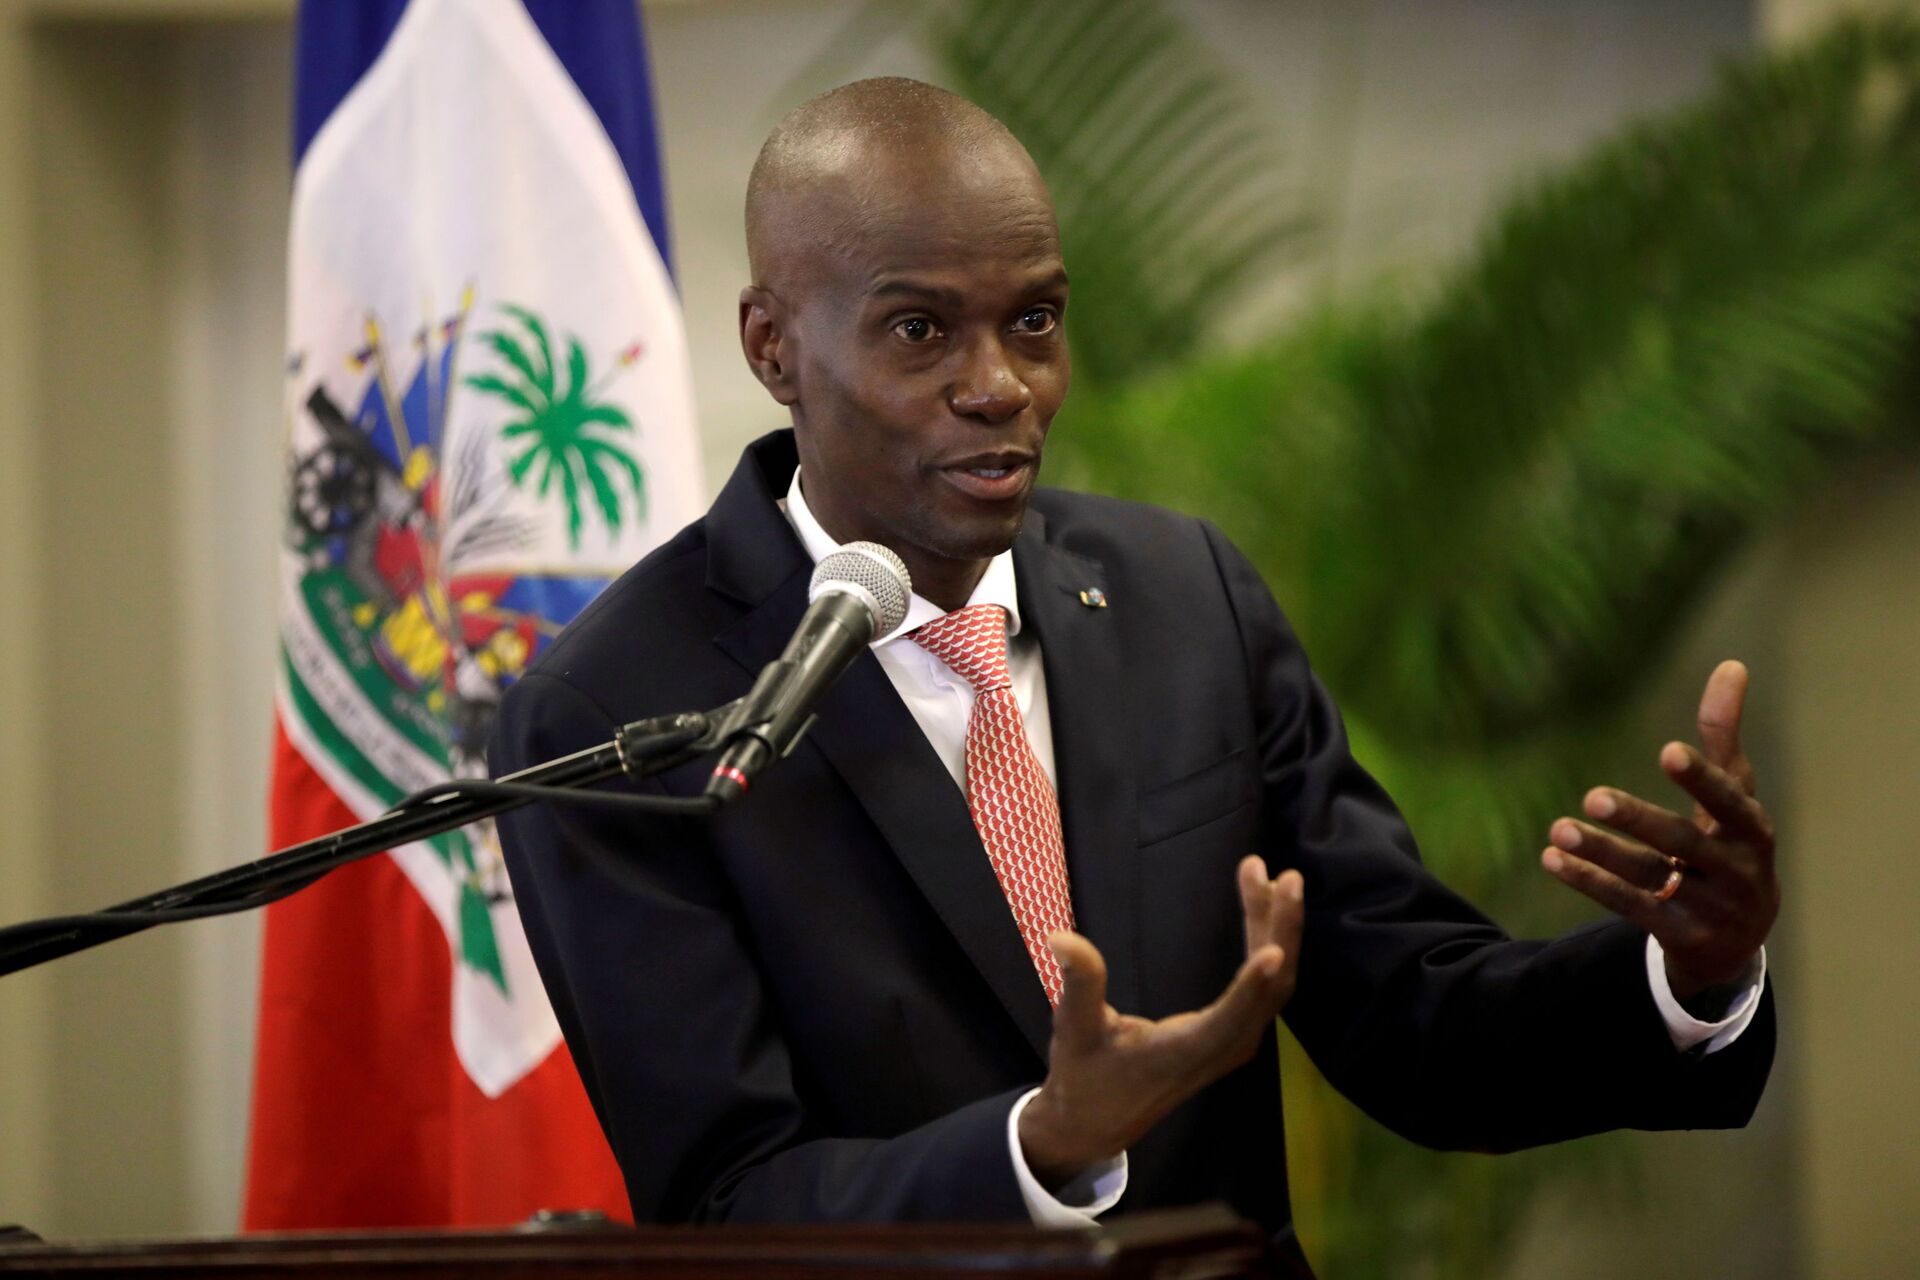 Primeiro-ministro do Haiti declara estado de emergência após assassinato do presidente Jovenel Moïse - Sputnik Brasil, 1920, 07.07.2021